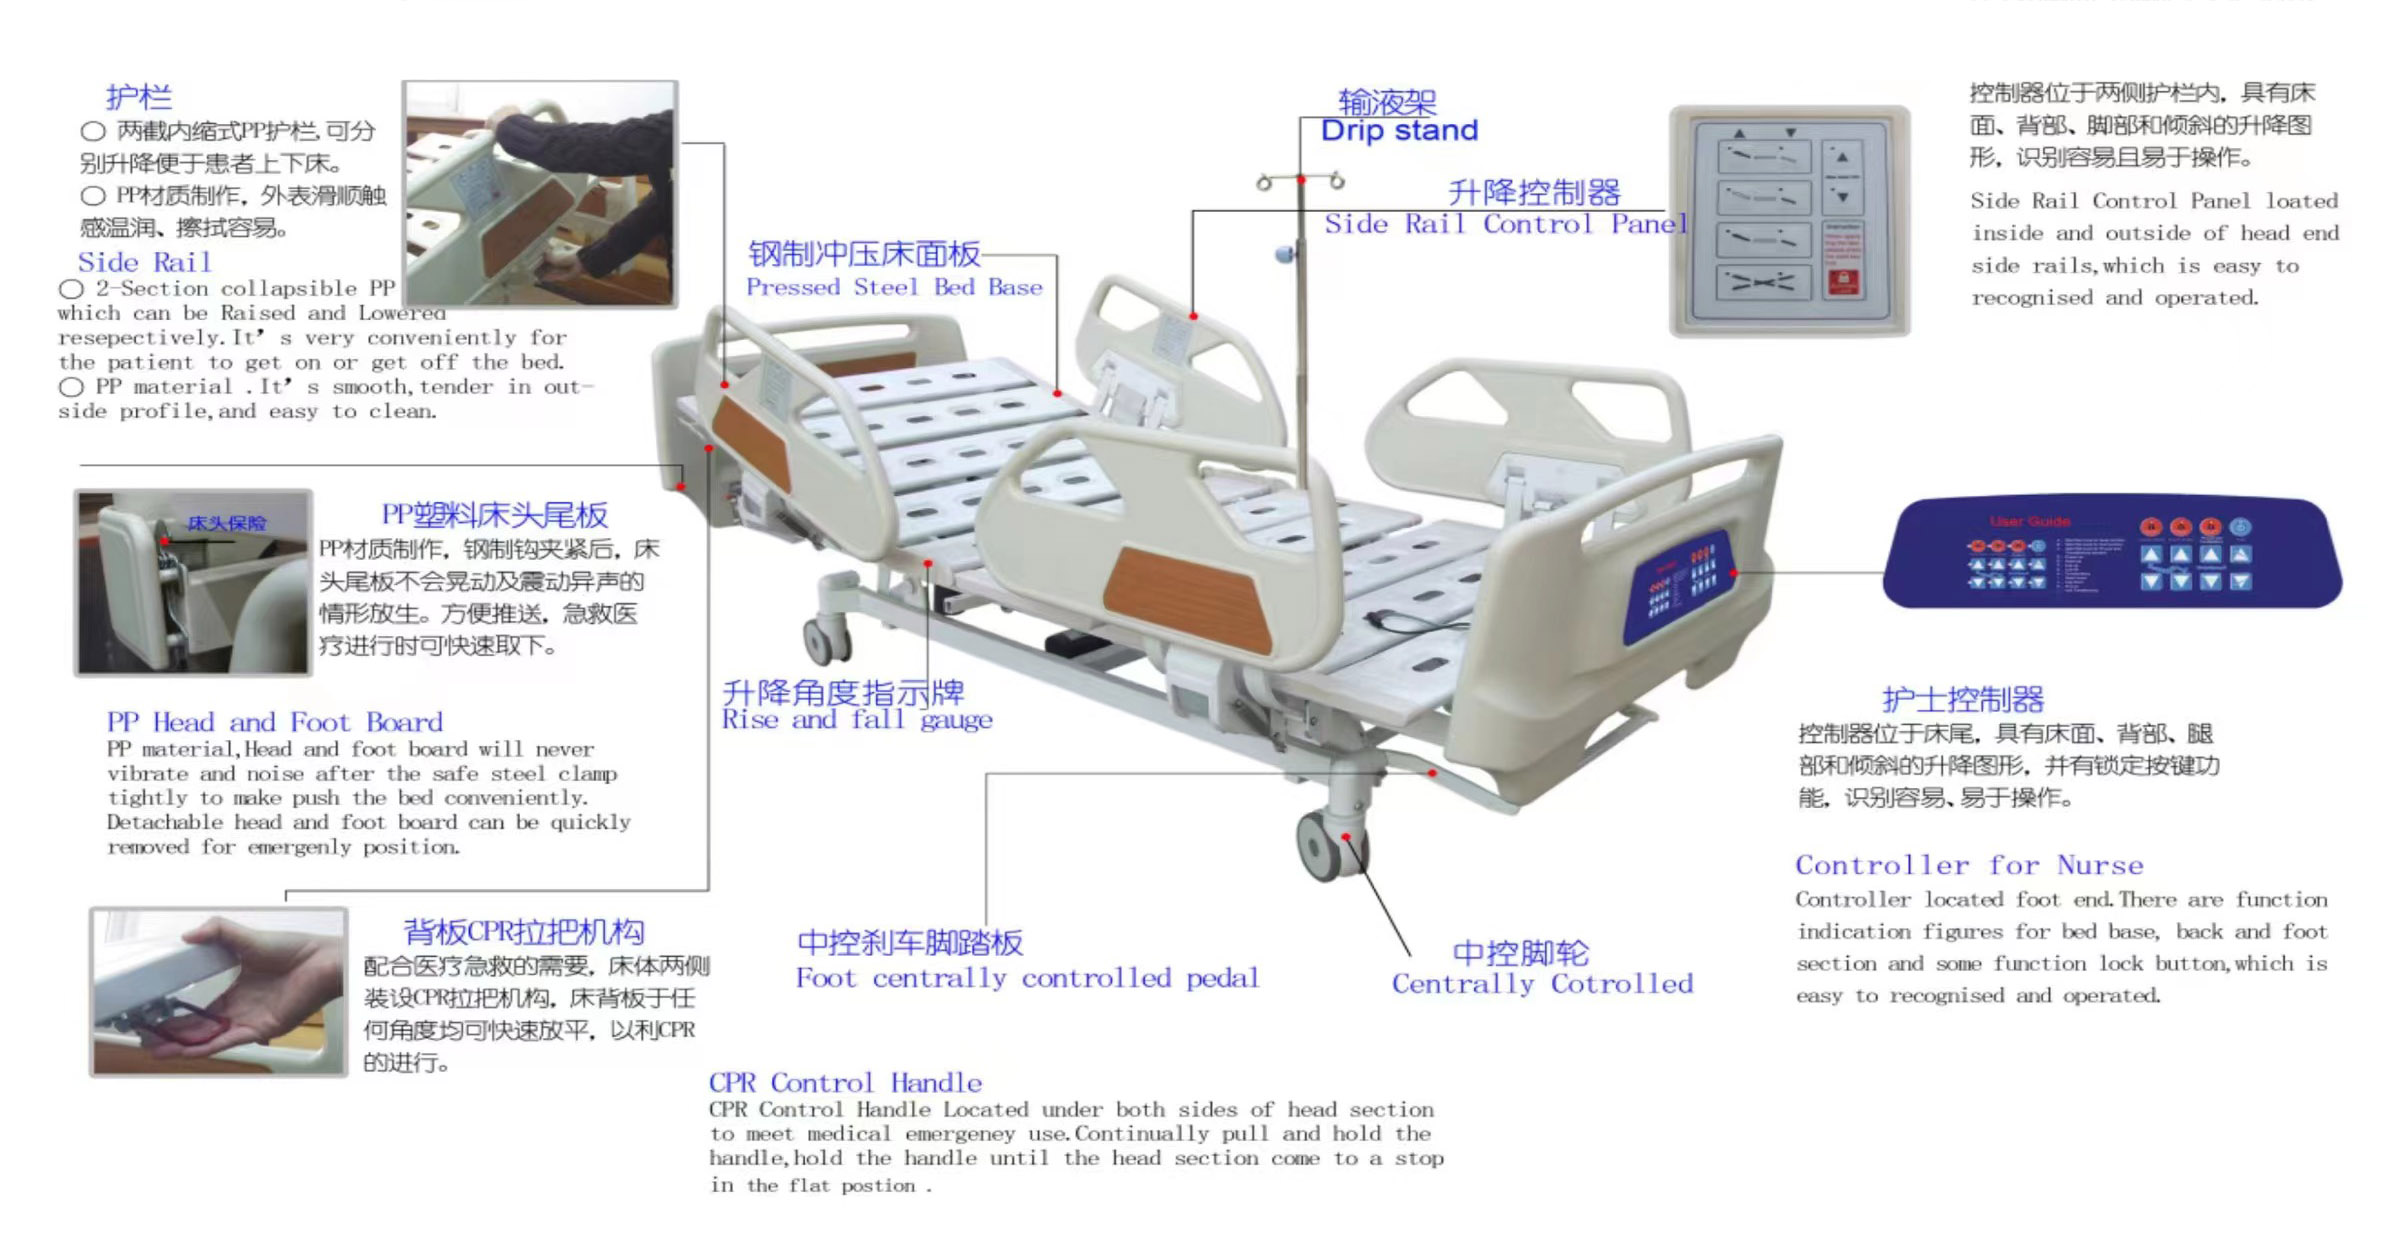 Cama hospitalar elétrica (cama de trombólise) (7)